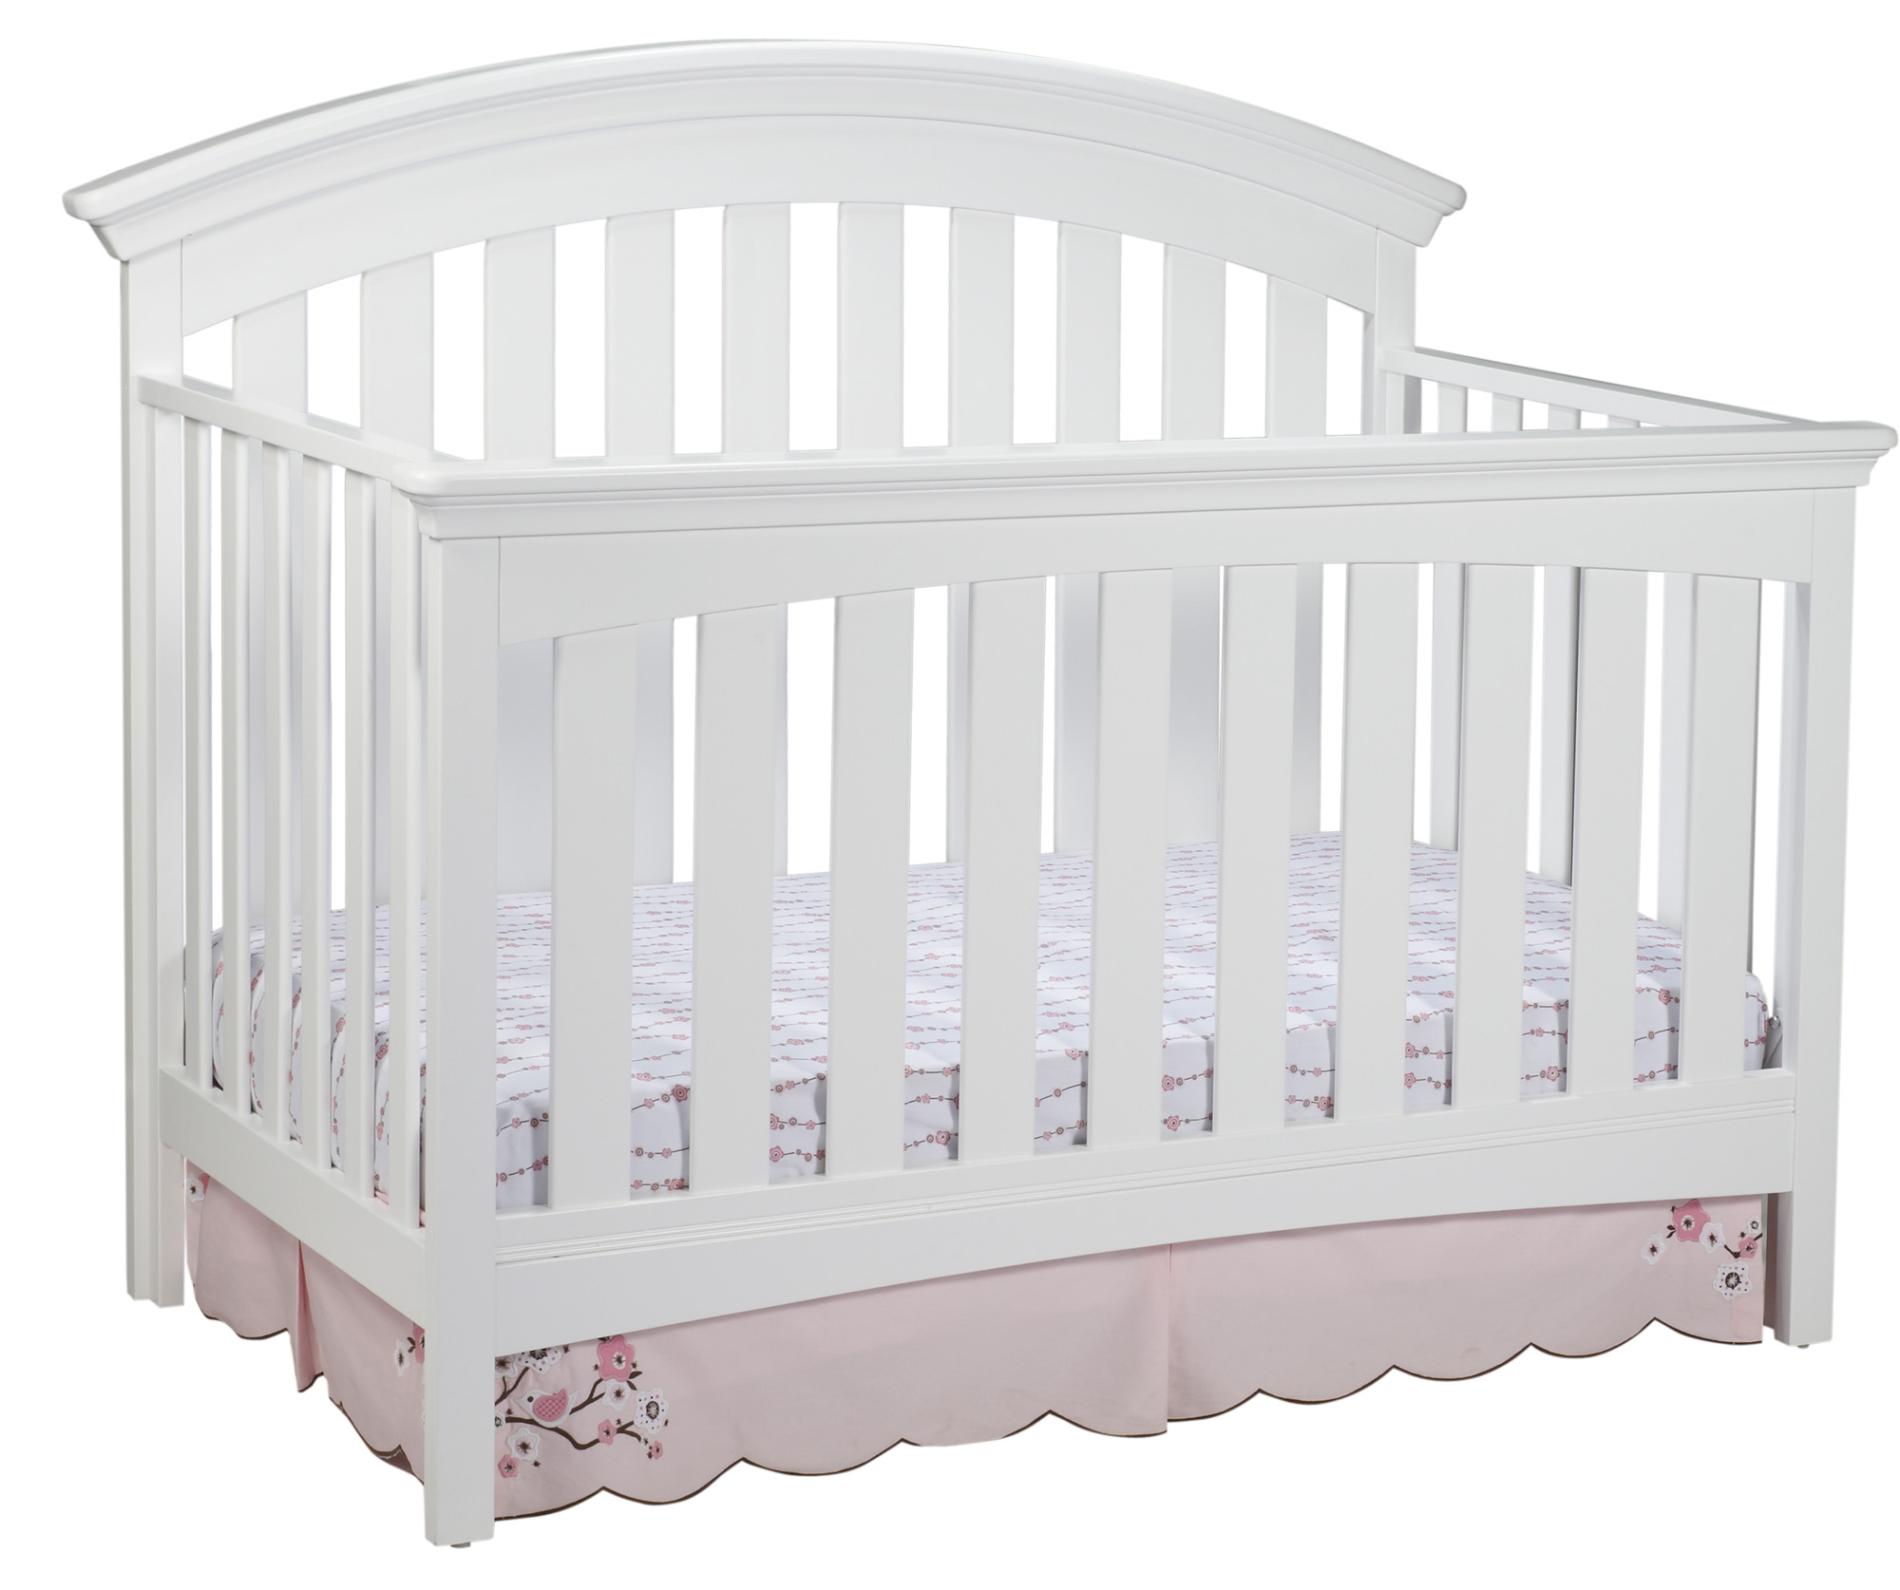 sears baby cribs